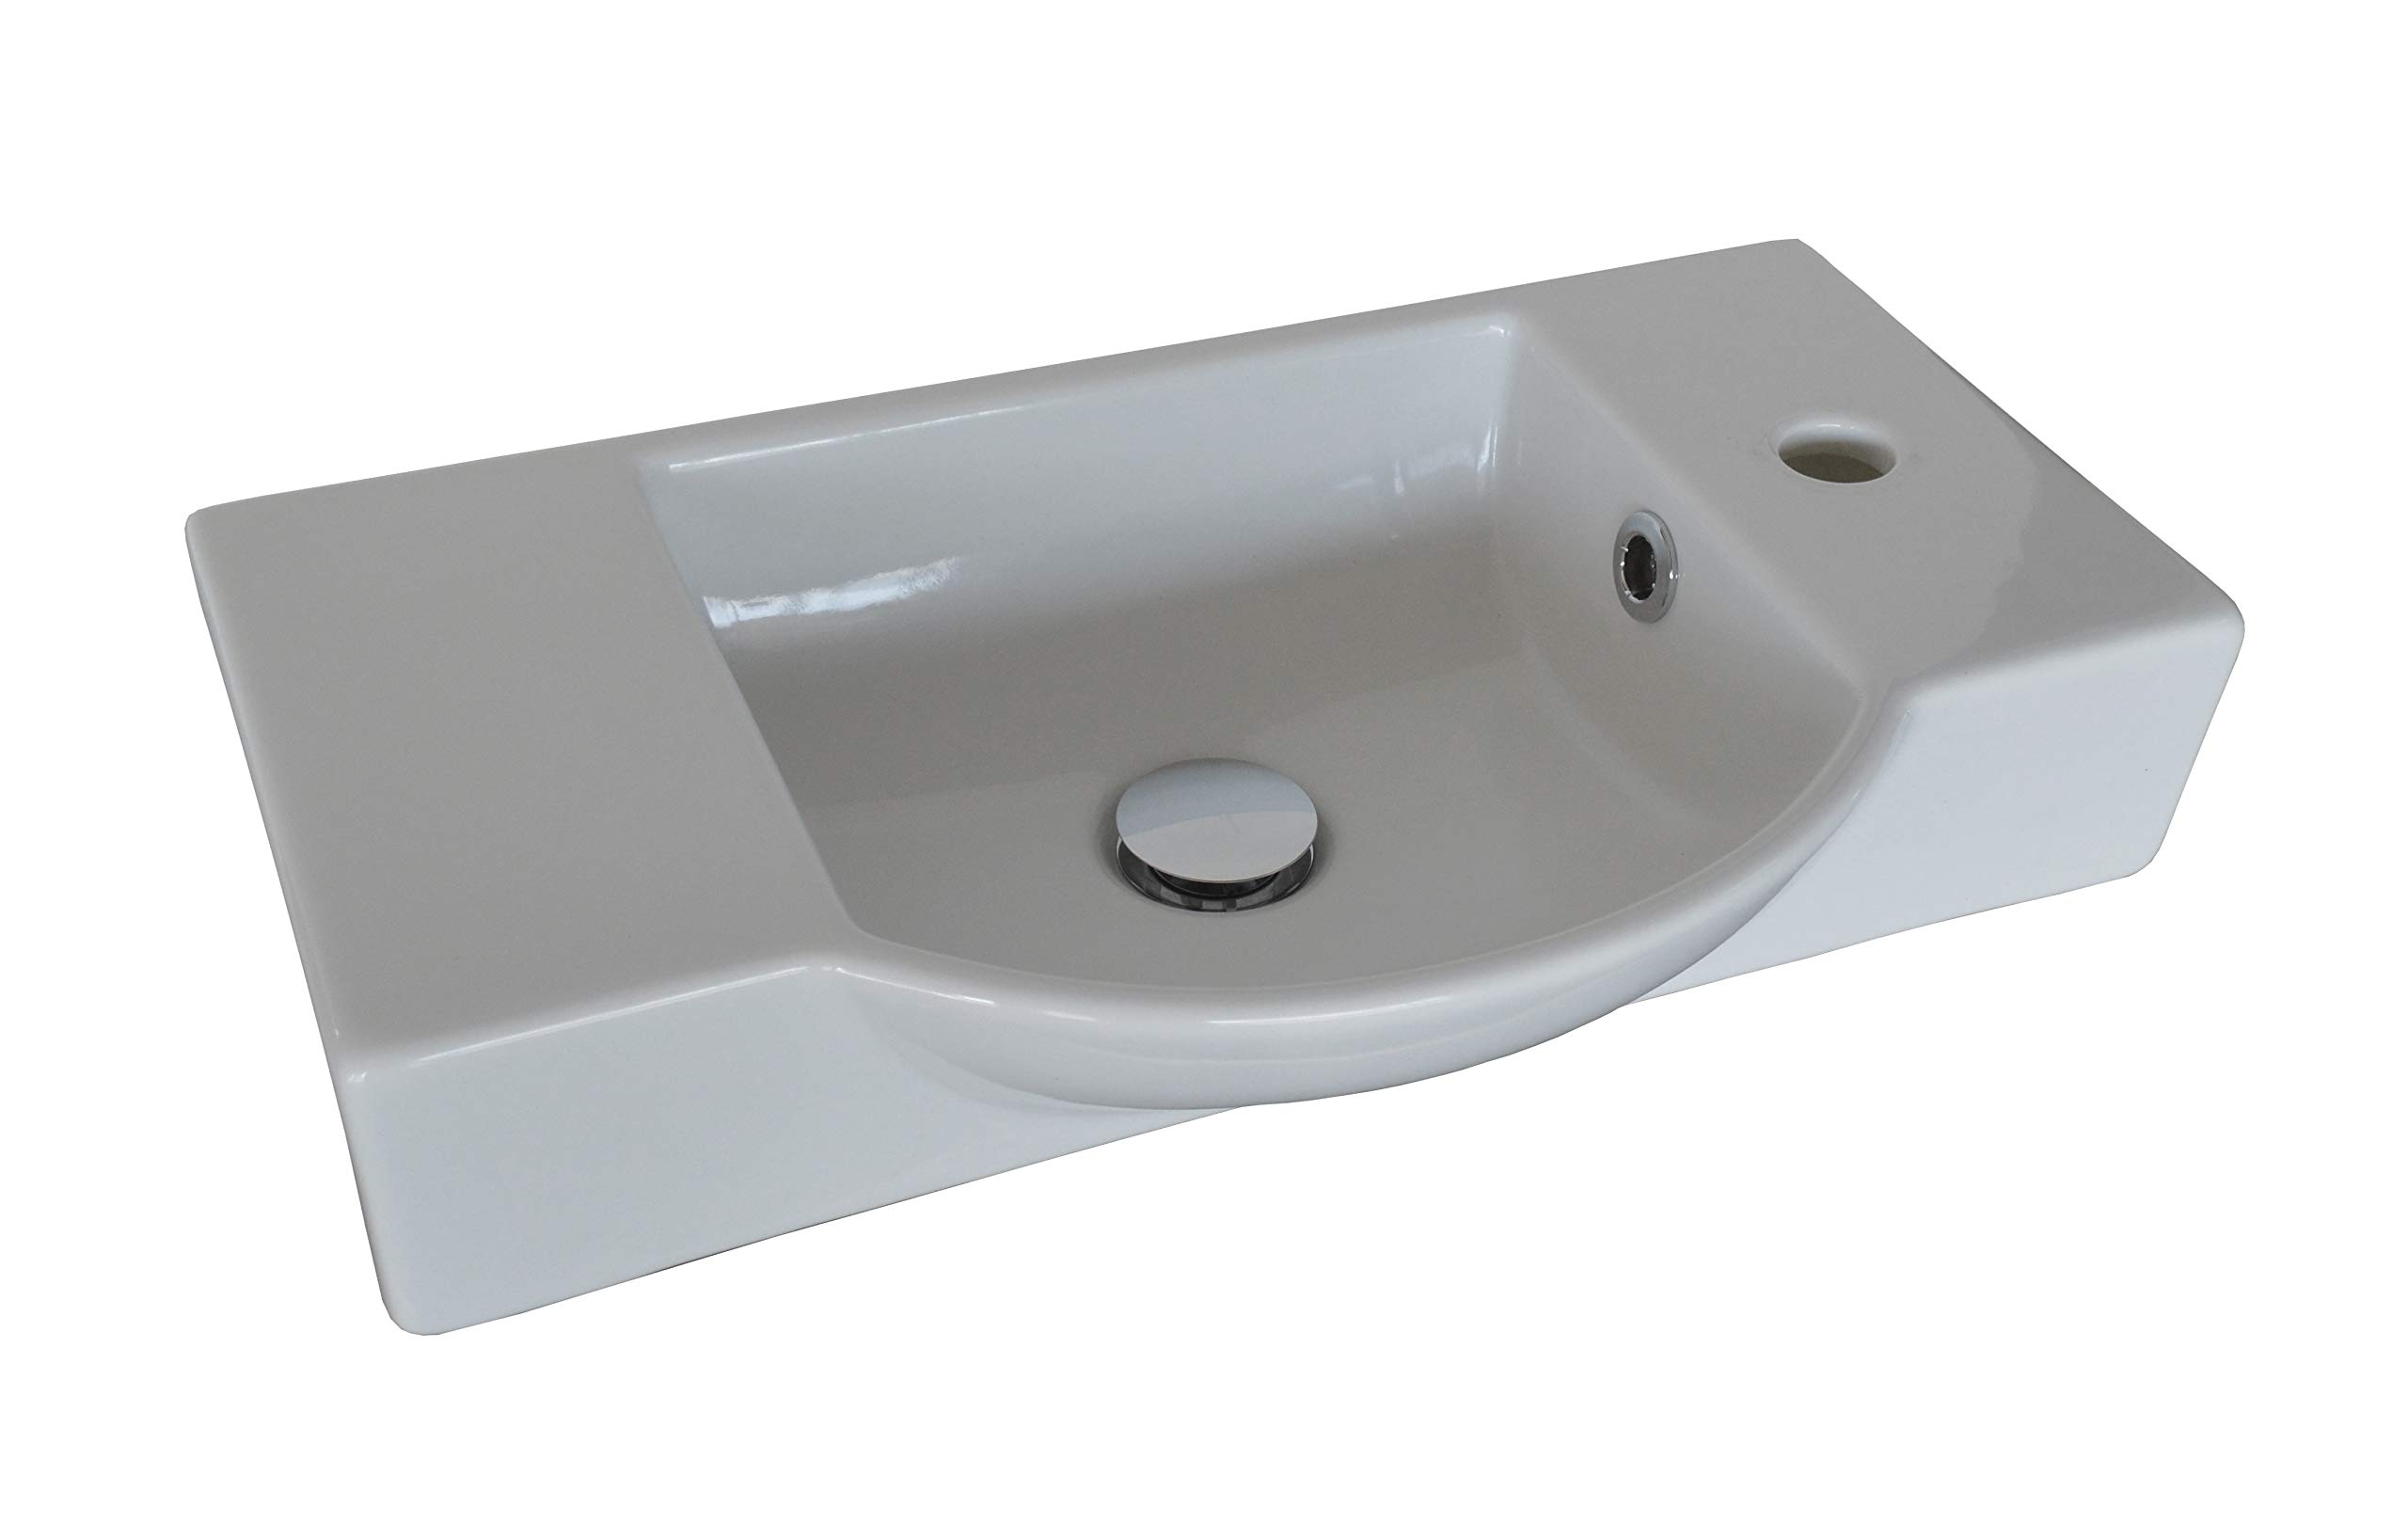 FACKELMANN Keramikbecken Gäste-WC/Waschtisch aus Keramik/Maße (B x H x T): ca. 54,5 x 10,5 x 32 cm/hochwertiges Becken fürs Badezimmer und WC/Armatur rechts/Farbe: Weiß/Breite: 54,5 cm